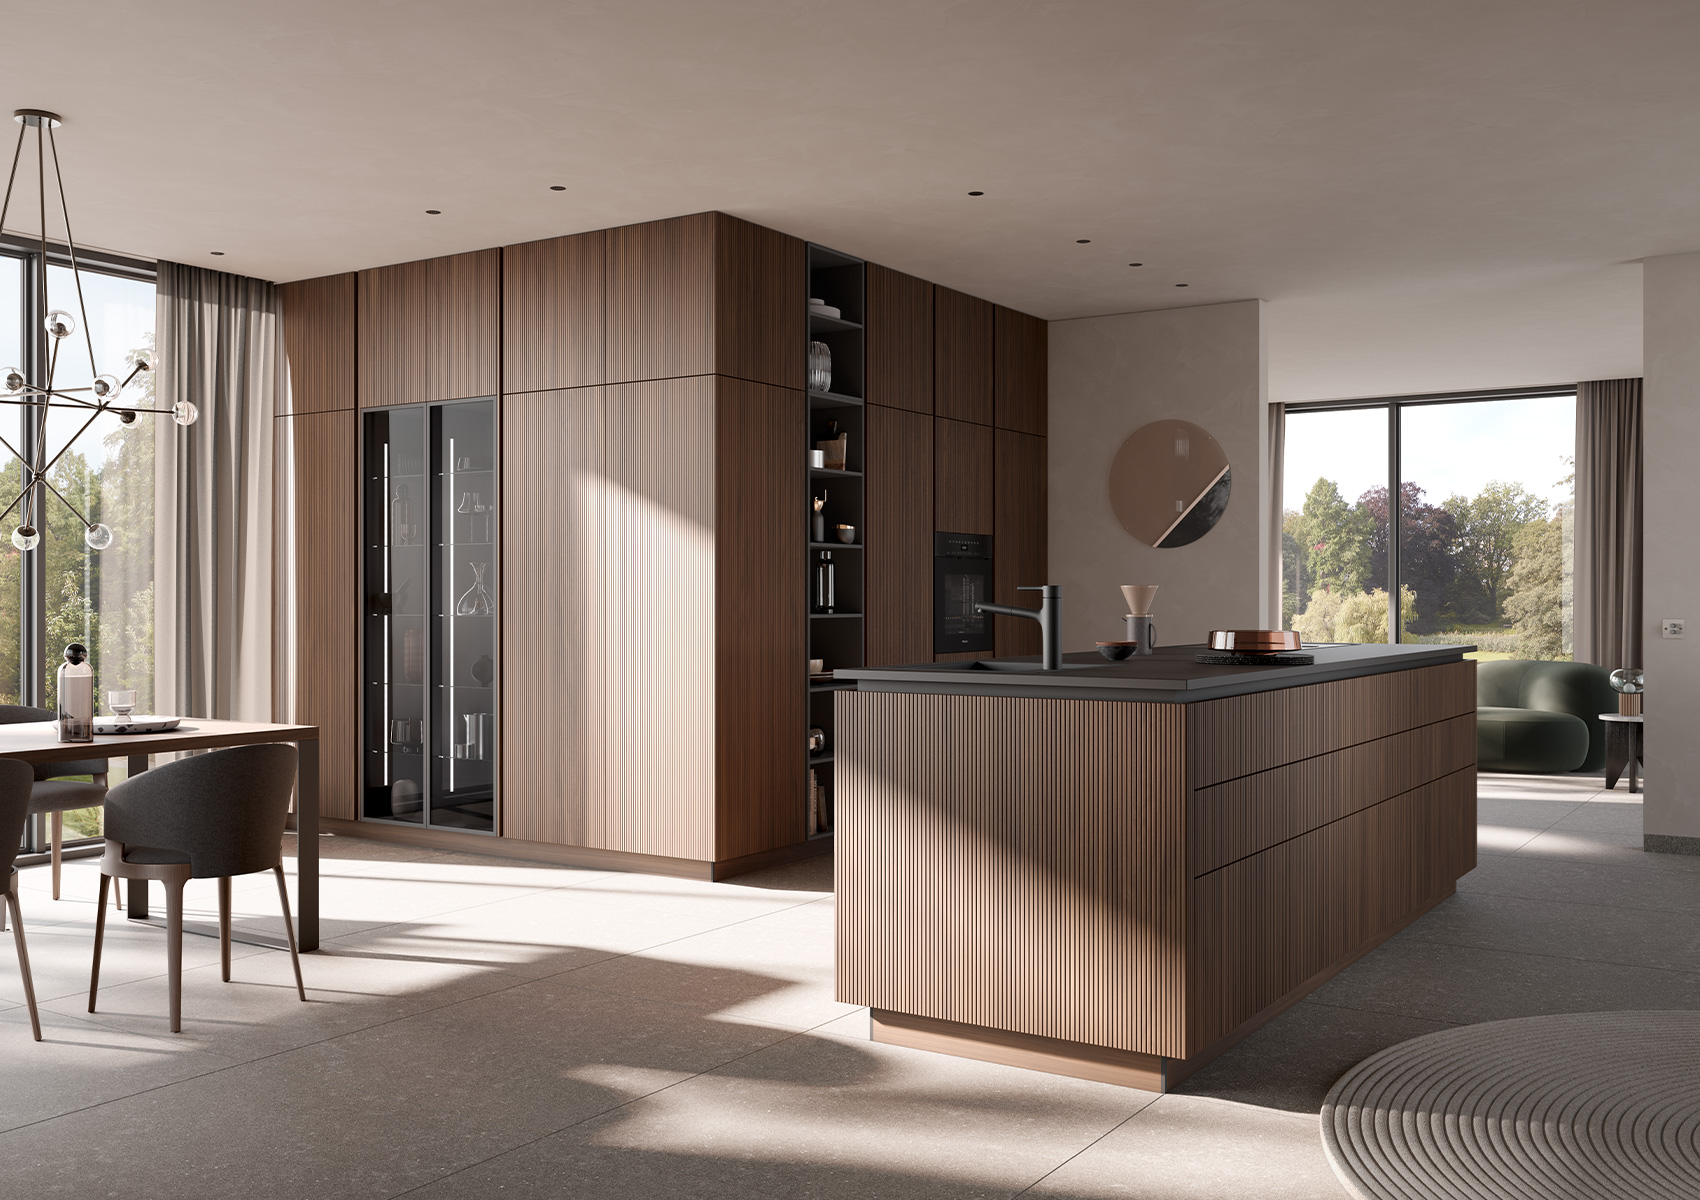 Über-Eck-Ansicht der Küchenkomposition mit Nussbaum-elegant-Fronten mit Fokus auf dem gläsernen Hochschrankelement